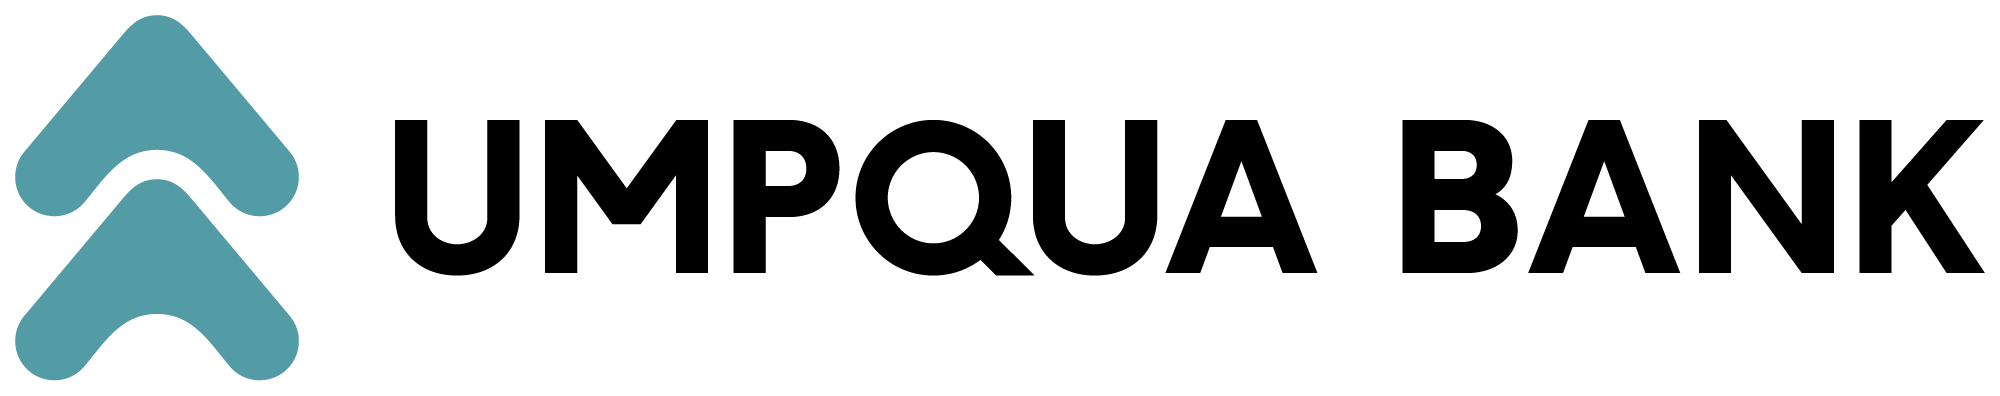 UB horz logo rgb-med.png